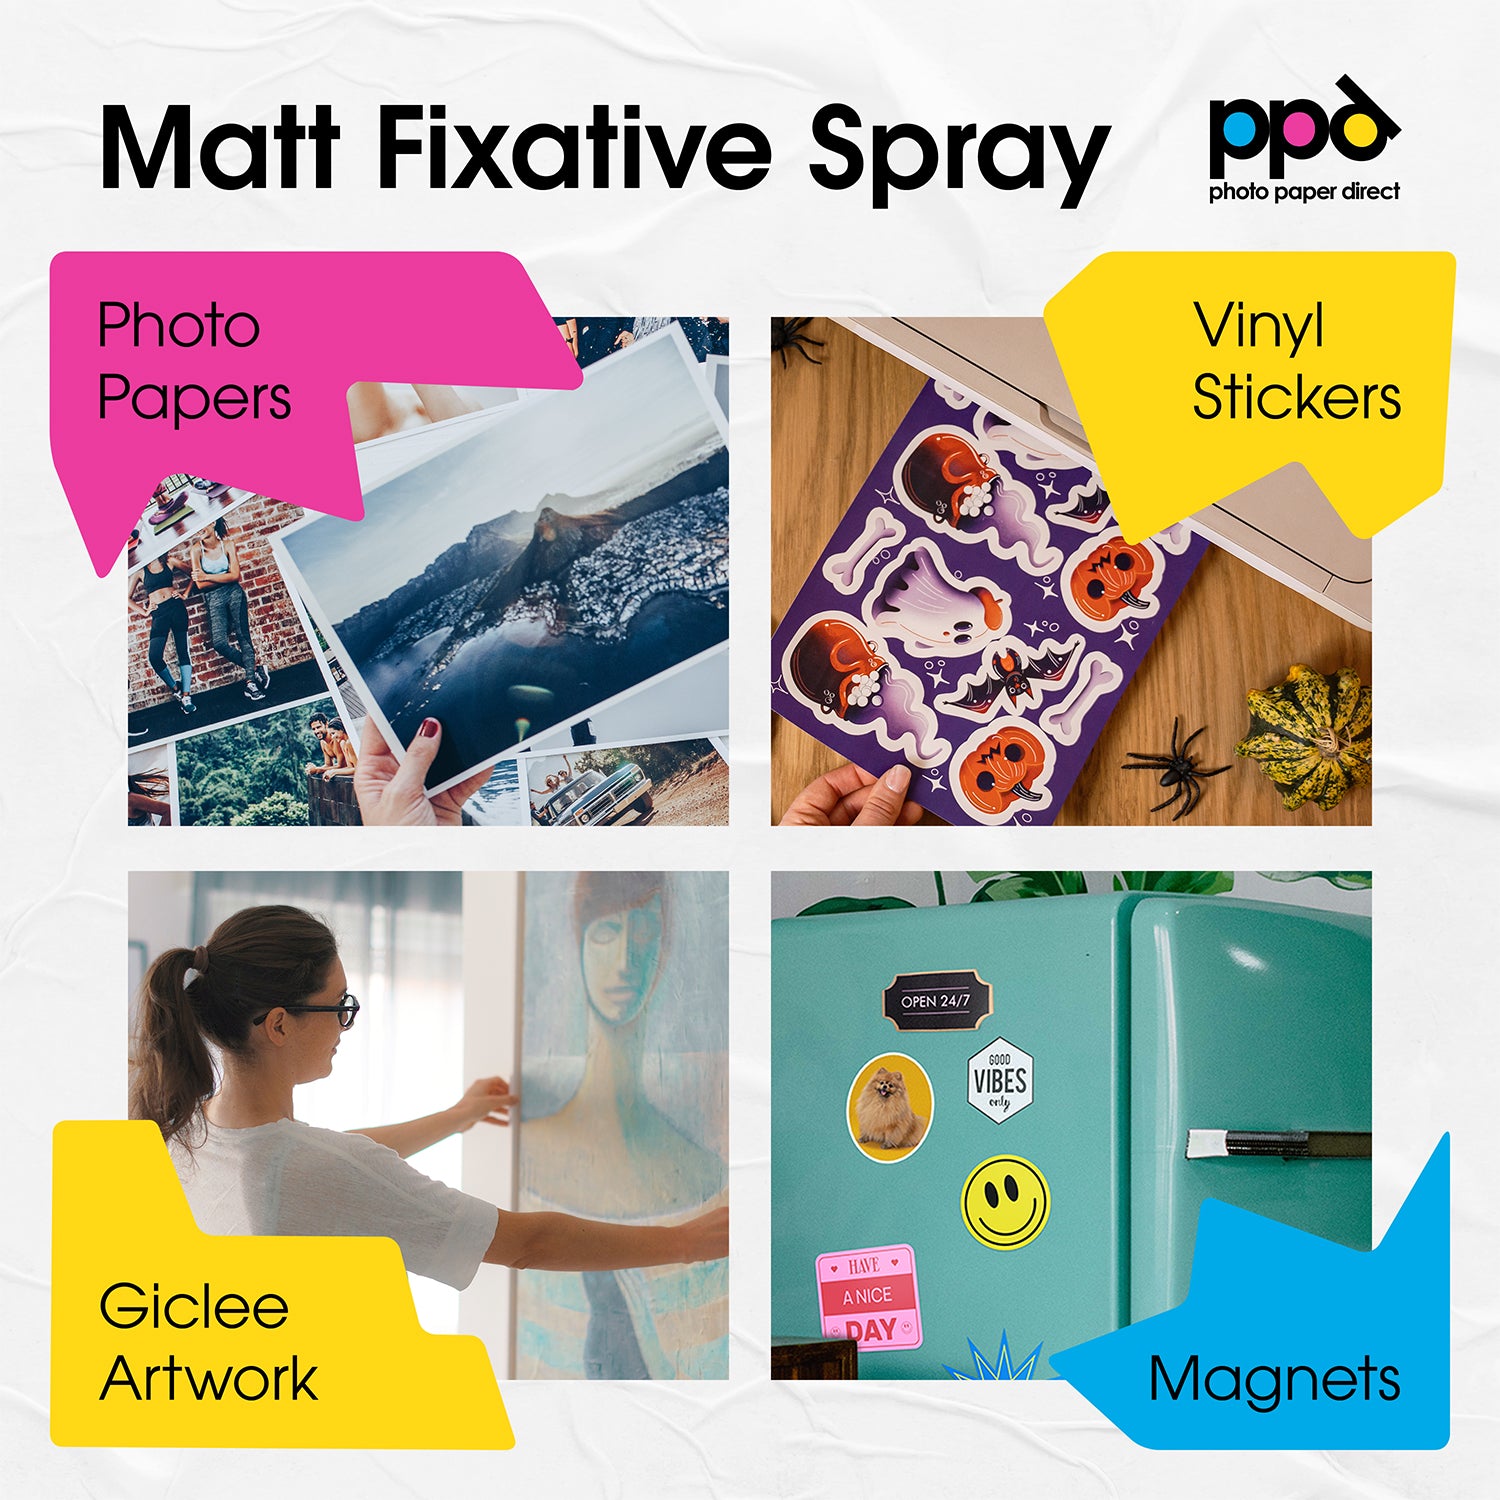 Ghiant INKJET FIX 400ml Matt Fixative Spray for Inkjet Papers